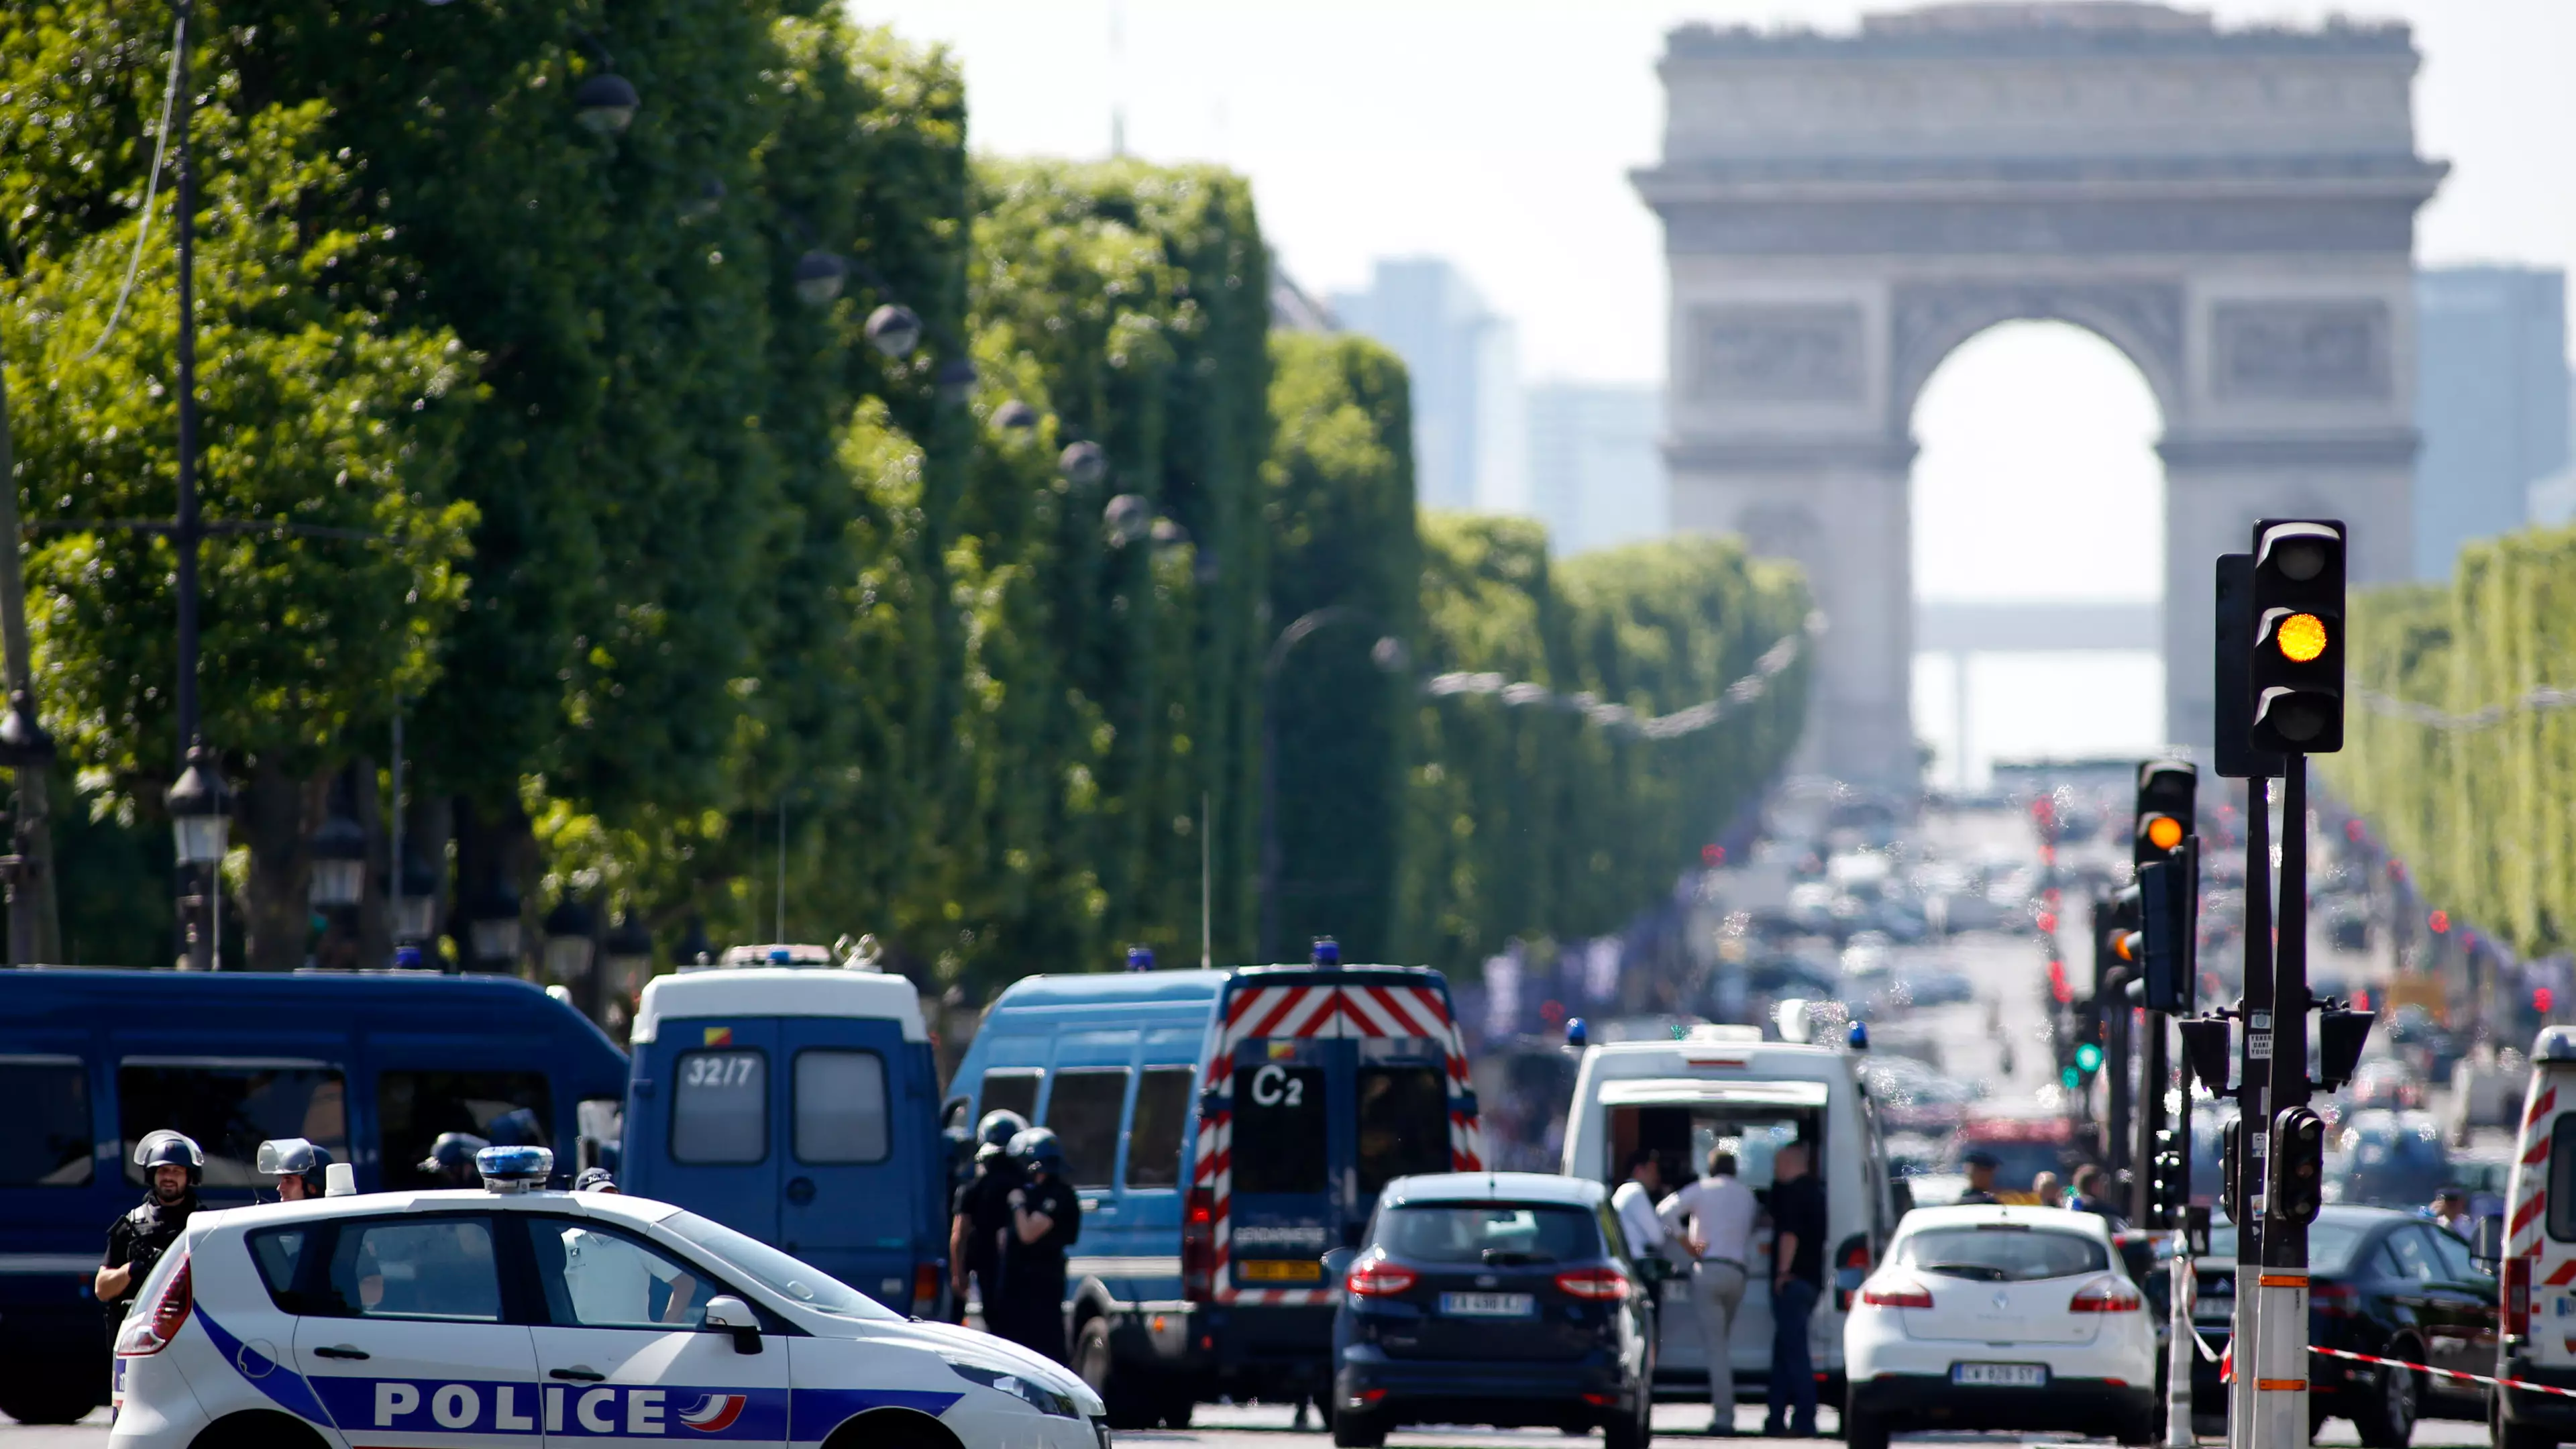 Champs-Élysées Cordoned Off After Car Hits Police Van In Paris 